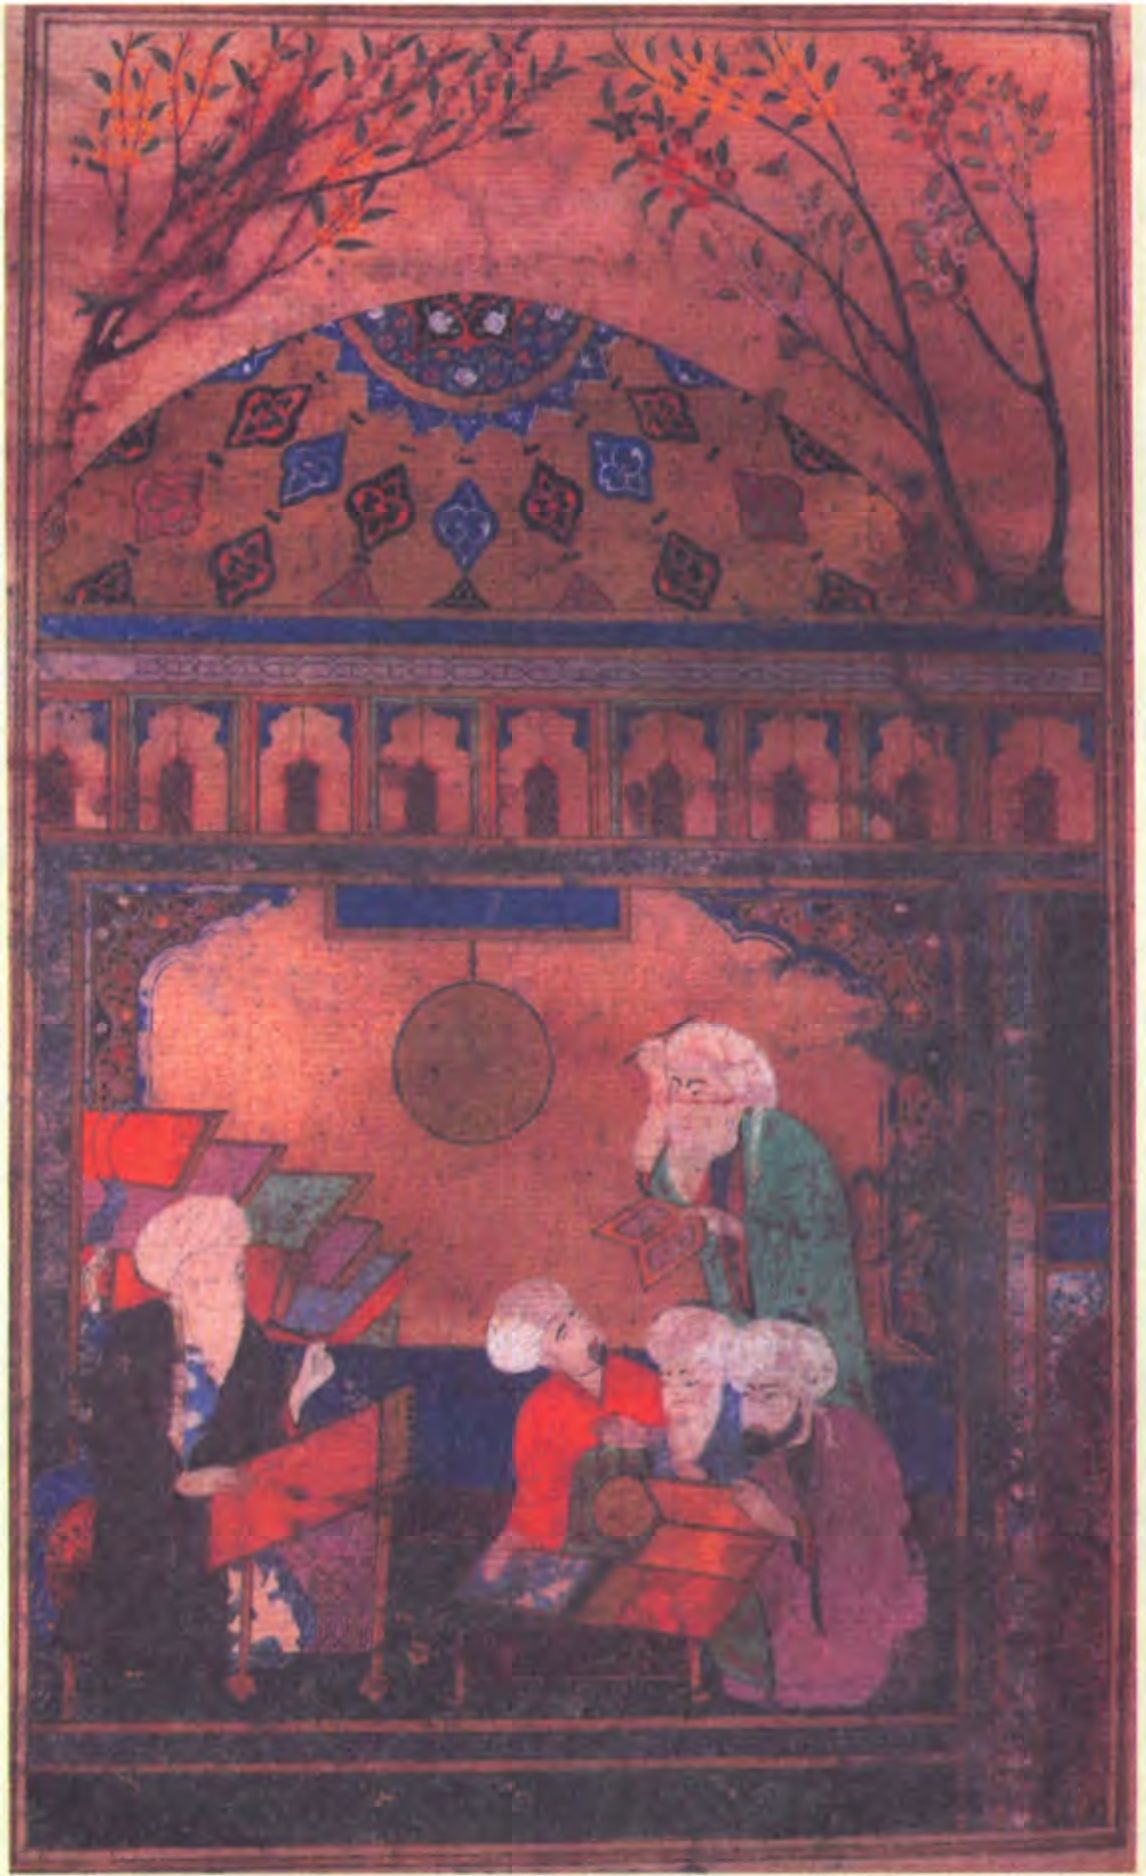 Великий Персидский астроном и астролог аль-Туси обучает последователей в обсерватории Марагхи середины тринадцатого века. (Британская Библиотека)